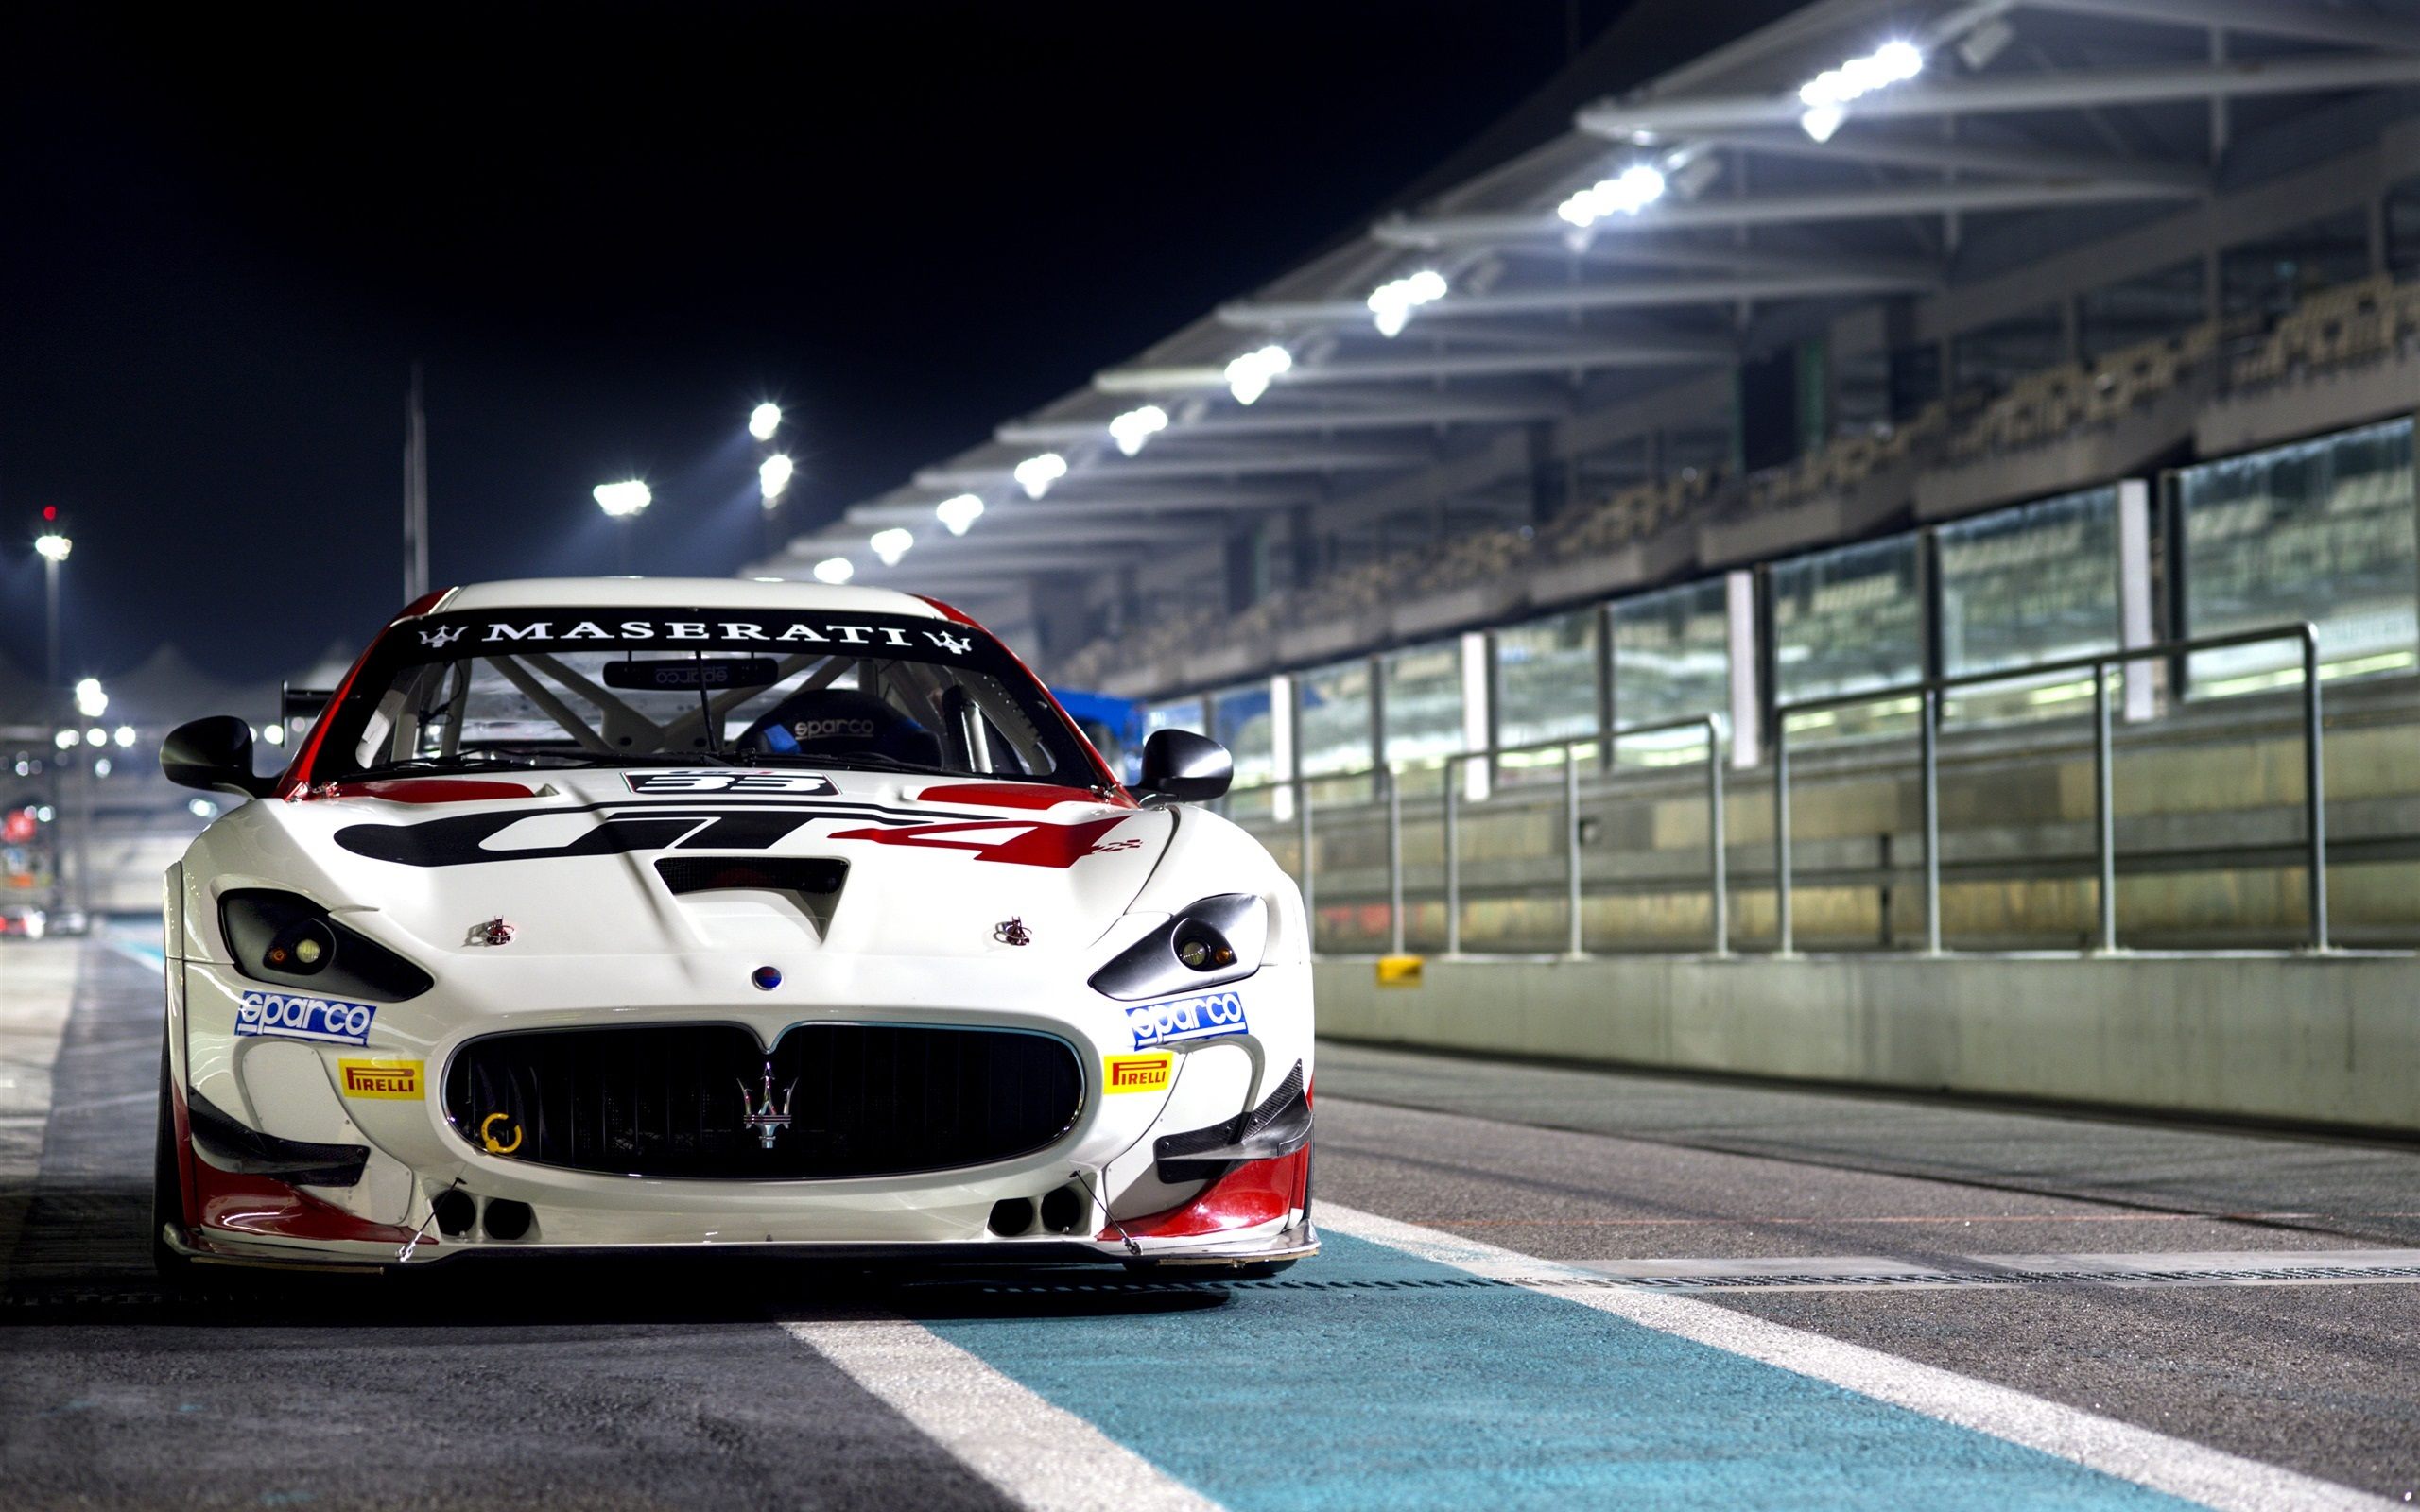 Maserati GT Racing Car Wallpaper HD Download For Desktop